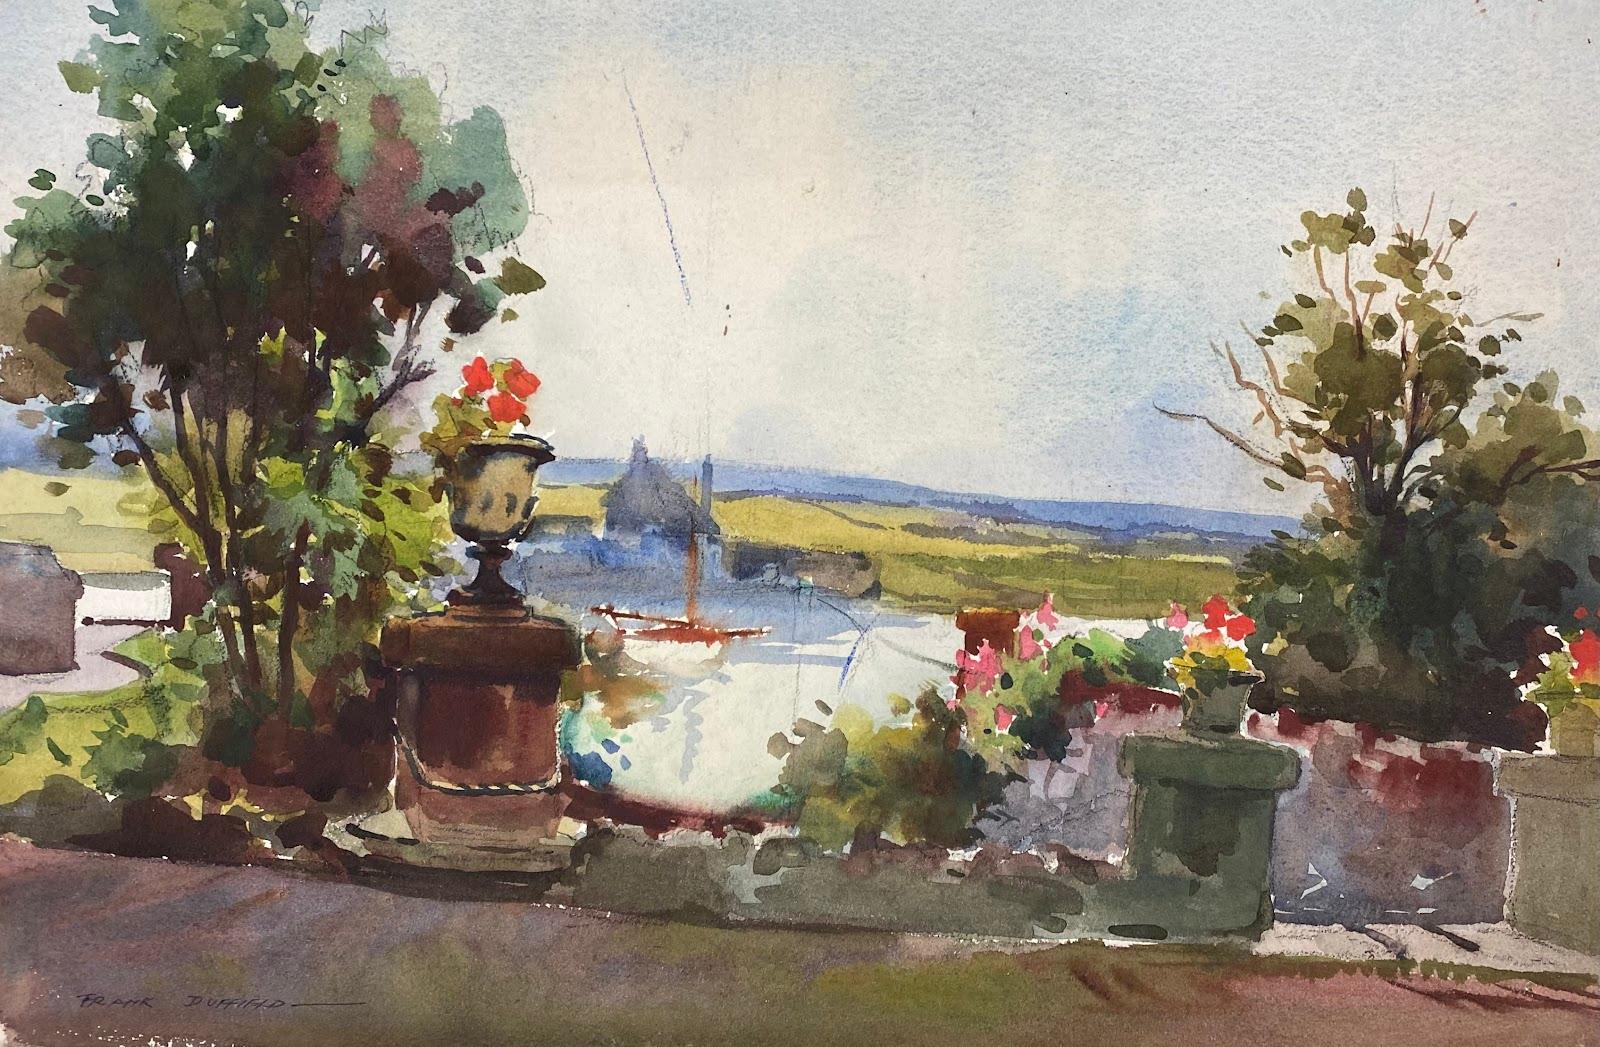 Frank Duffield Abstract Drawing – Britischer Impressionist malt Blumen, Laub und Boot auf dem See 